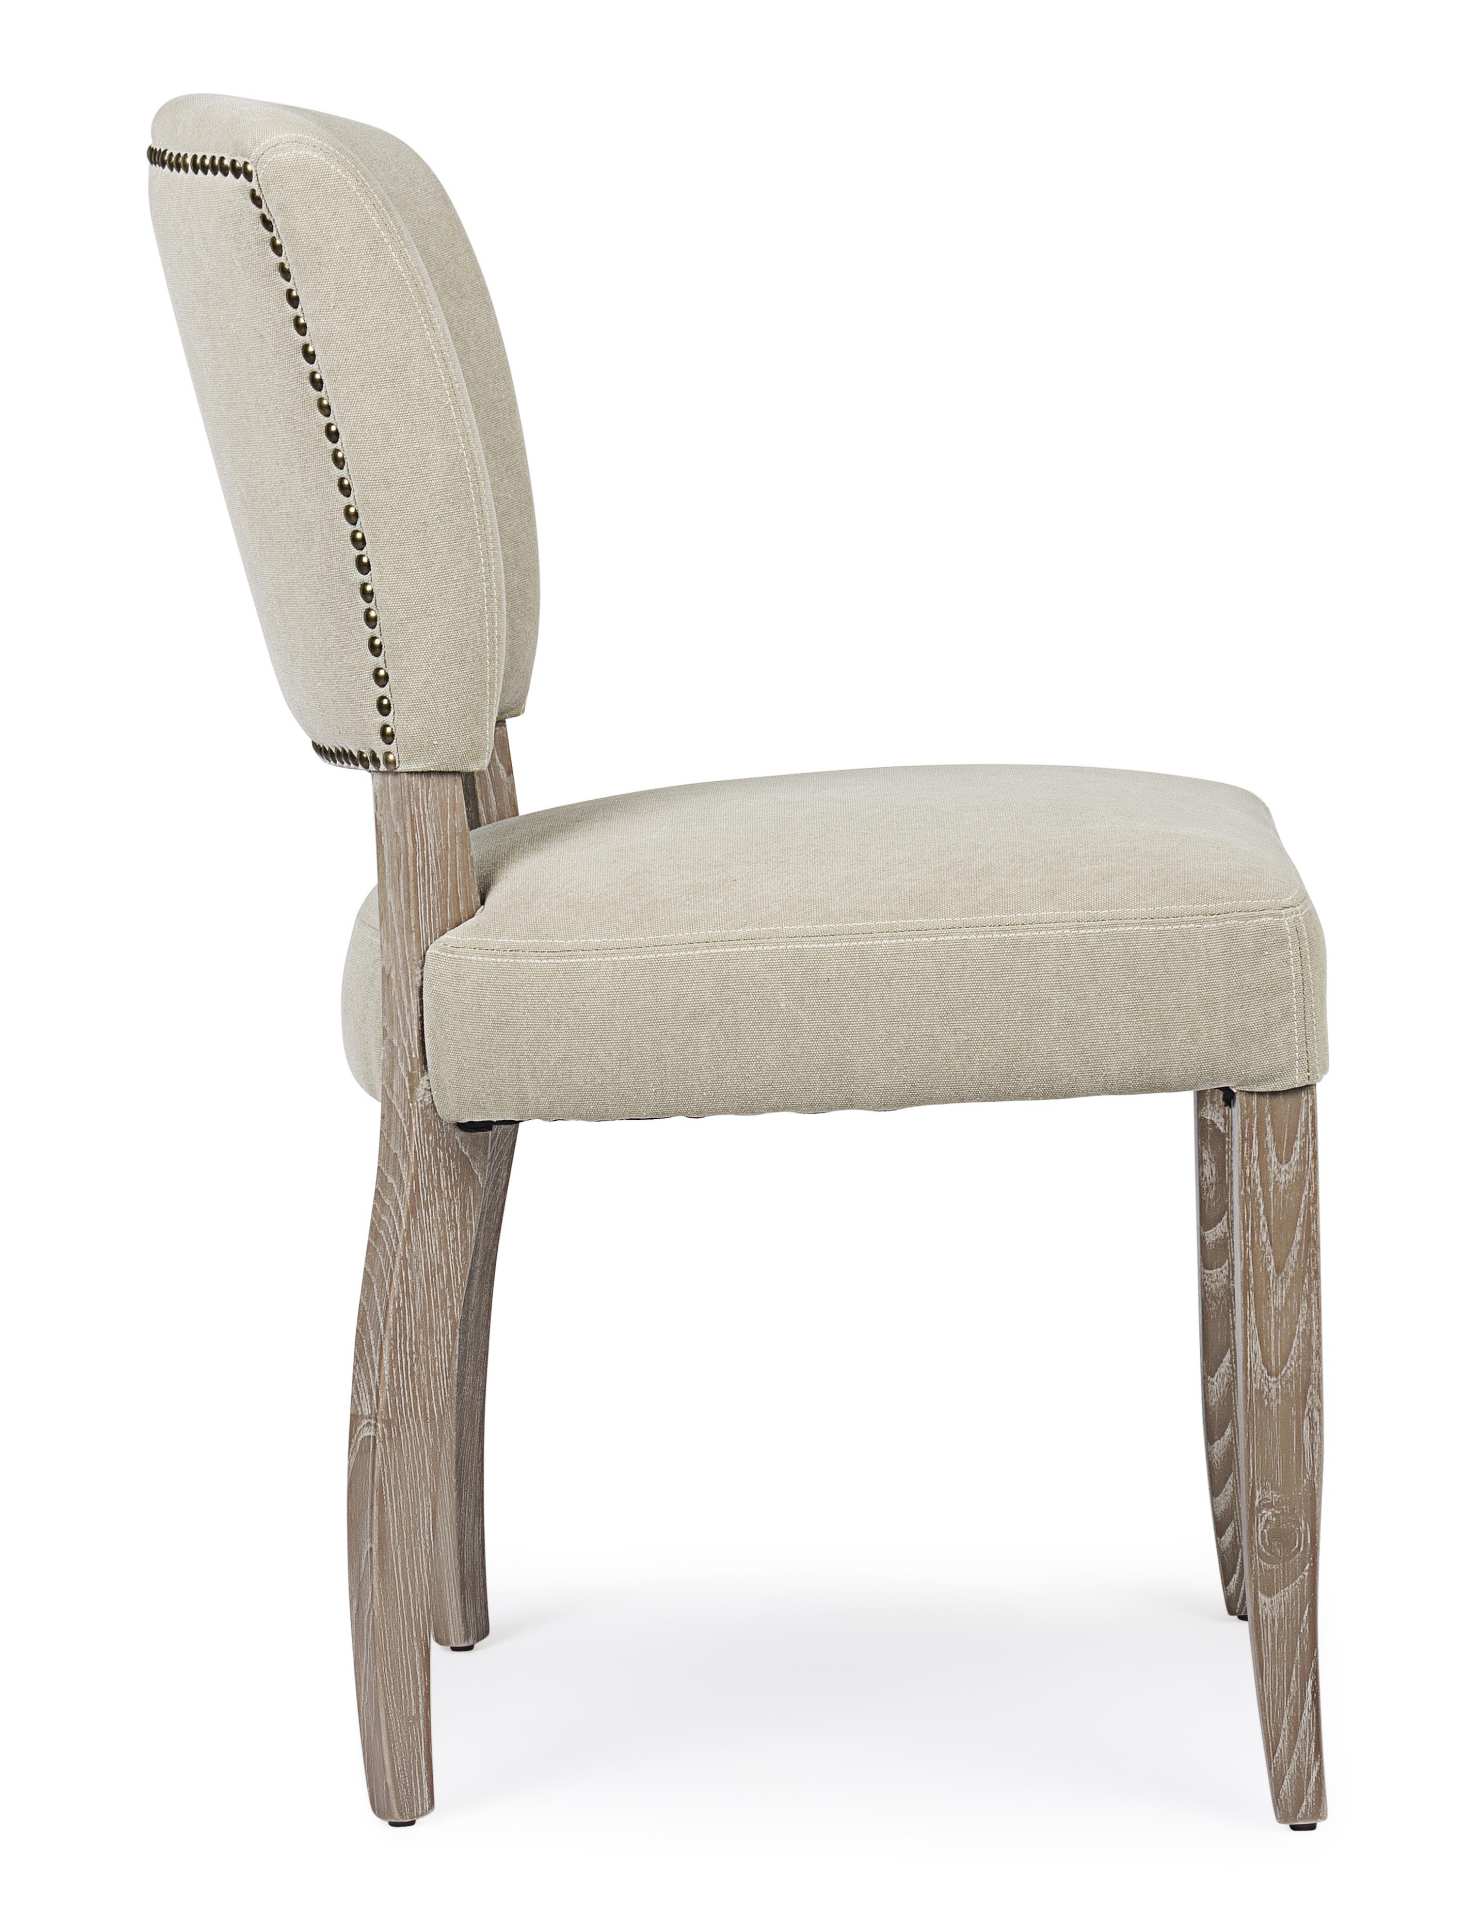 Der Esszimmerstuhl Maratriz überzeugt mit seinem klassischem Design. Gefertigt wurde der Stuhl aus Eschenholz, welches einen natürlichen Farbton besitzt. Die Sitz- und Rückenfläche besteht aus einem Mix aus Polyester und Baumwolle, welche einen natürliche